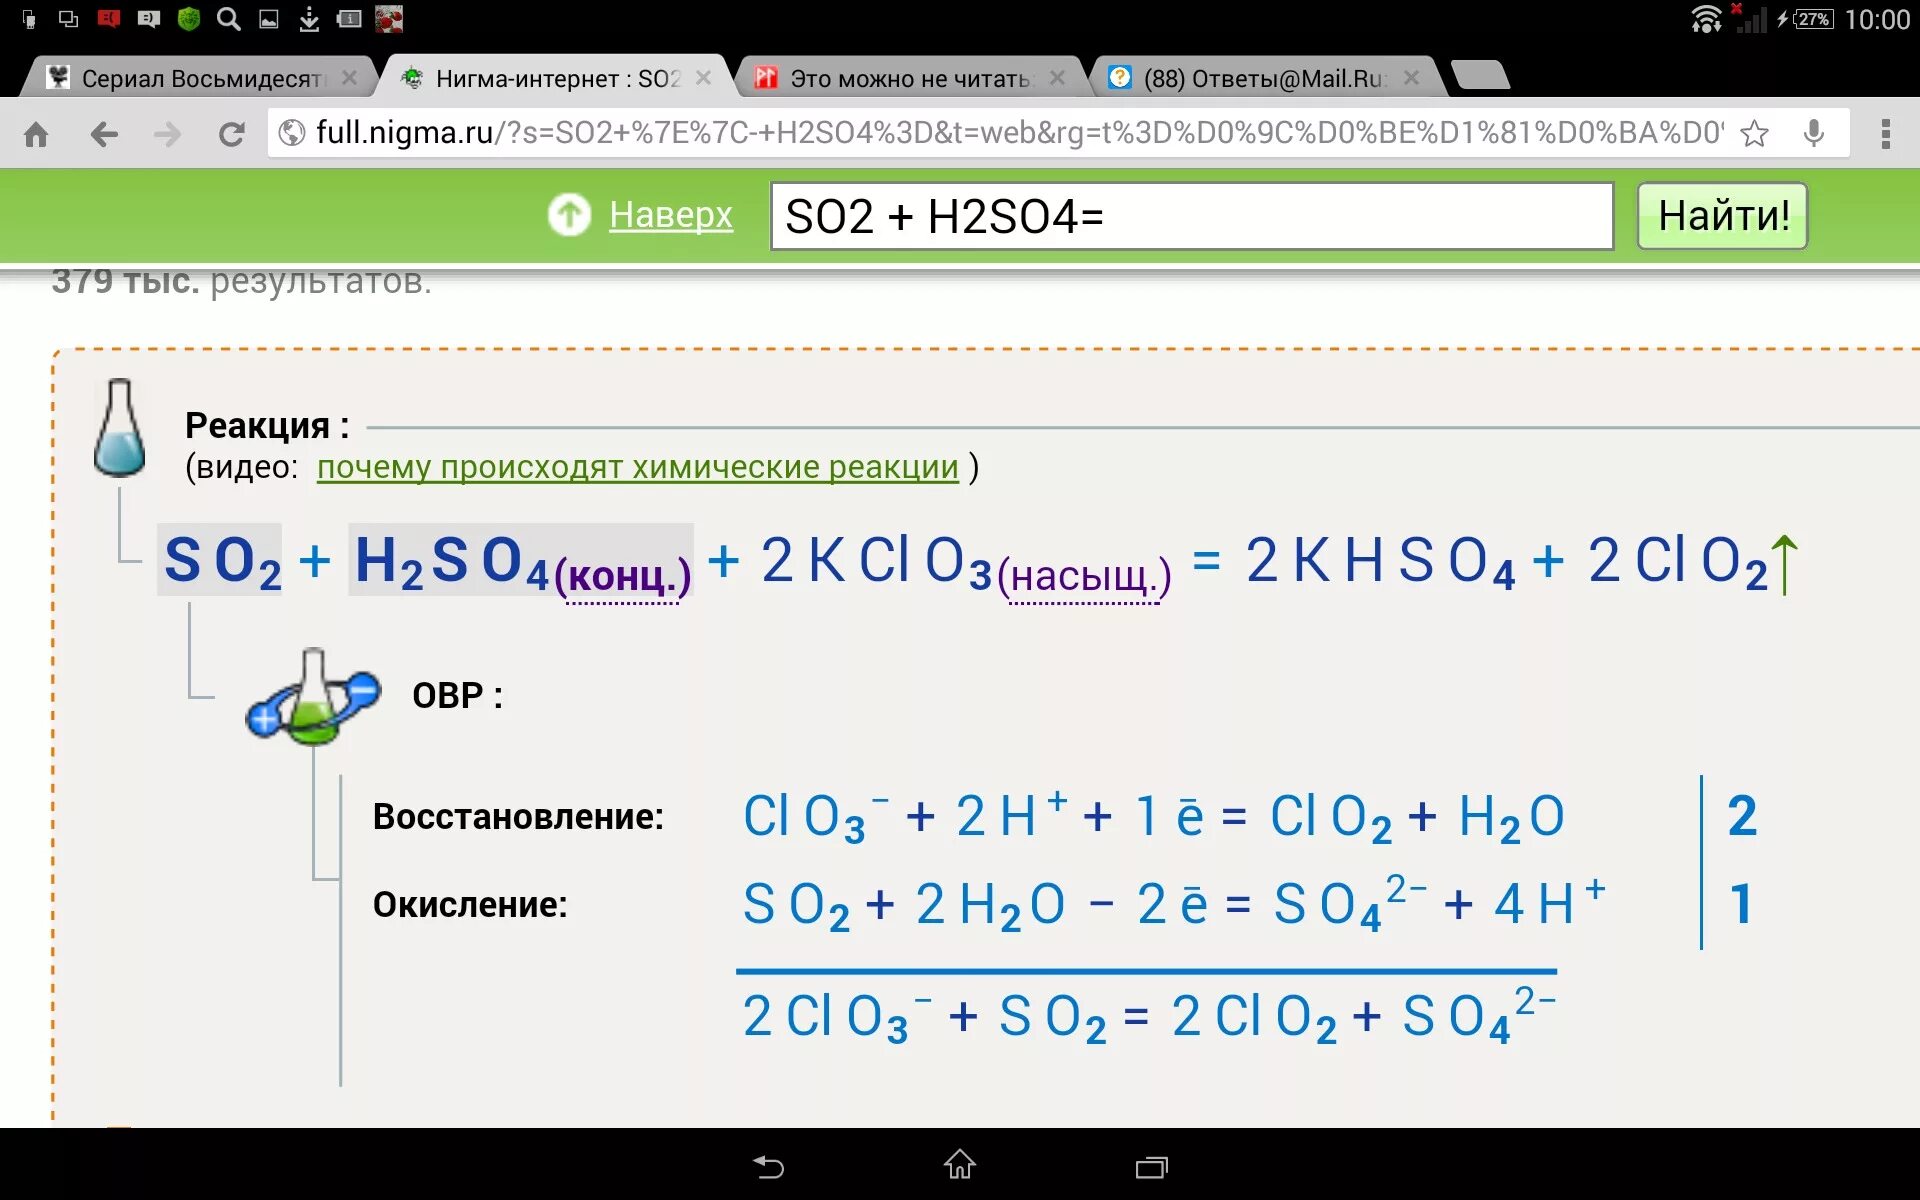 Распознавание na2so4. So2 h2so4. S+h2so4. S=h2so4=so2+h2). So2 h2so4 конц.